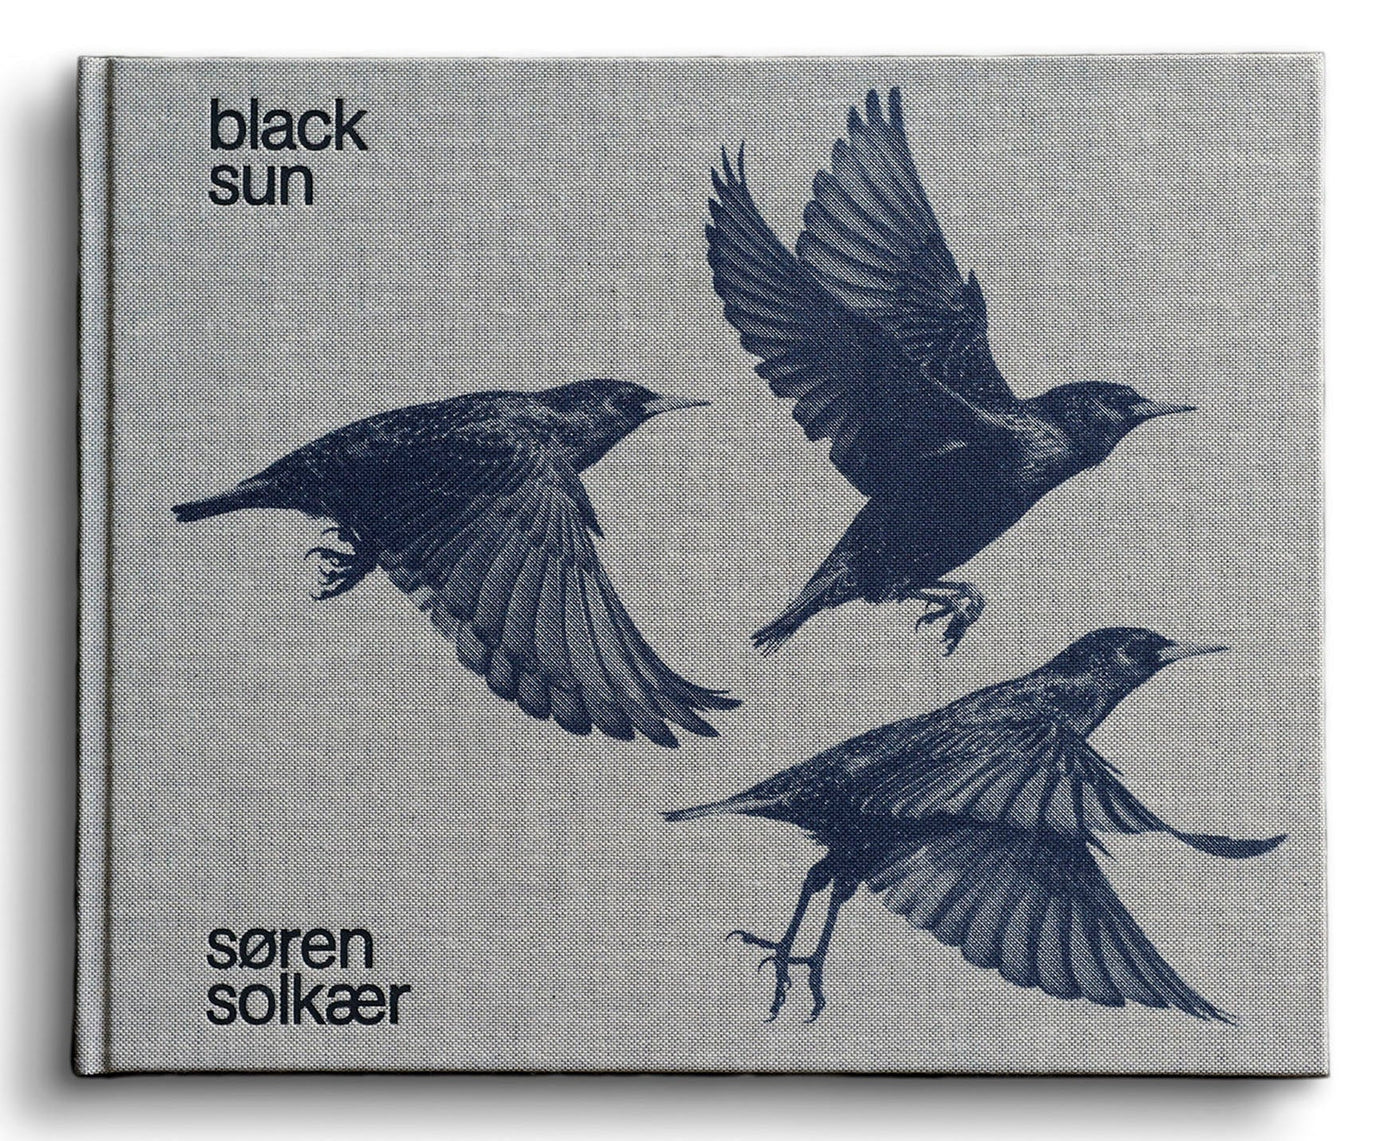 Starling & Black sun by Søren Solkaer - Tipi bookshop